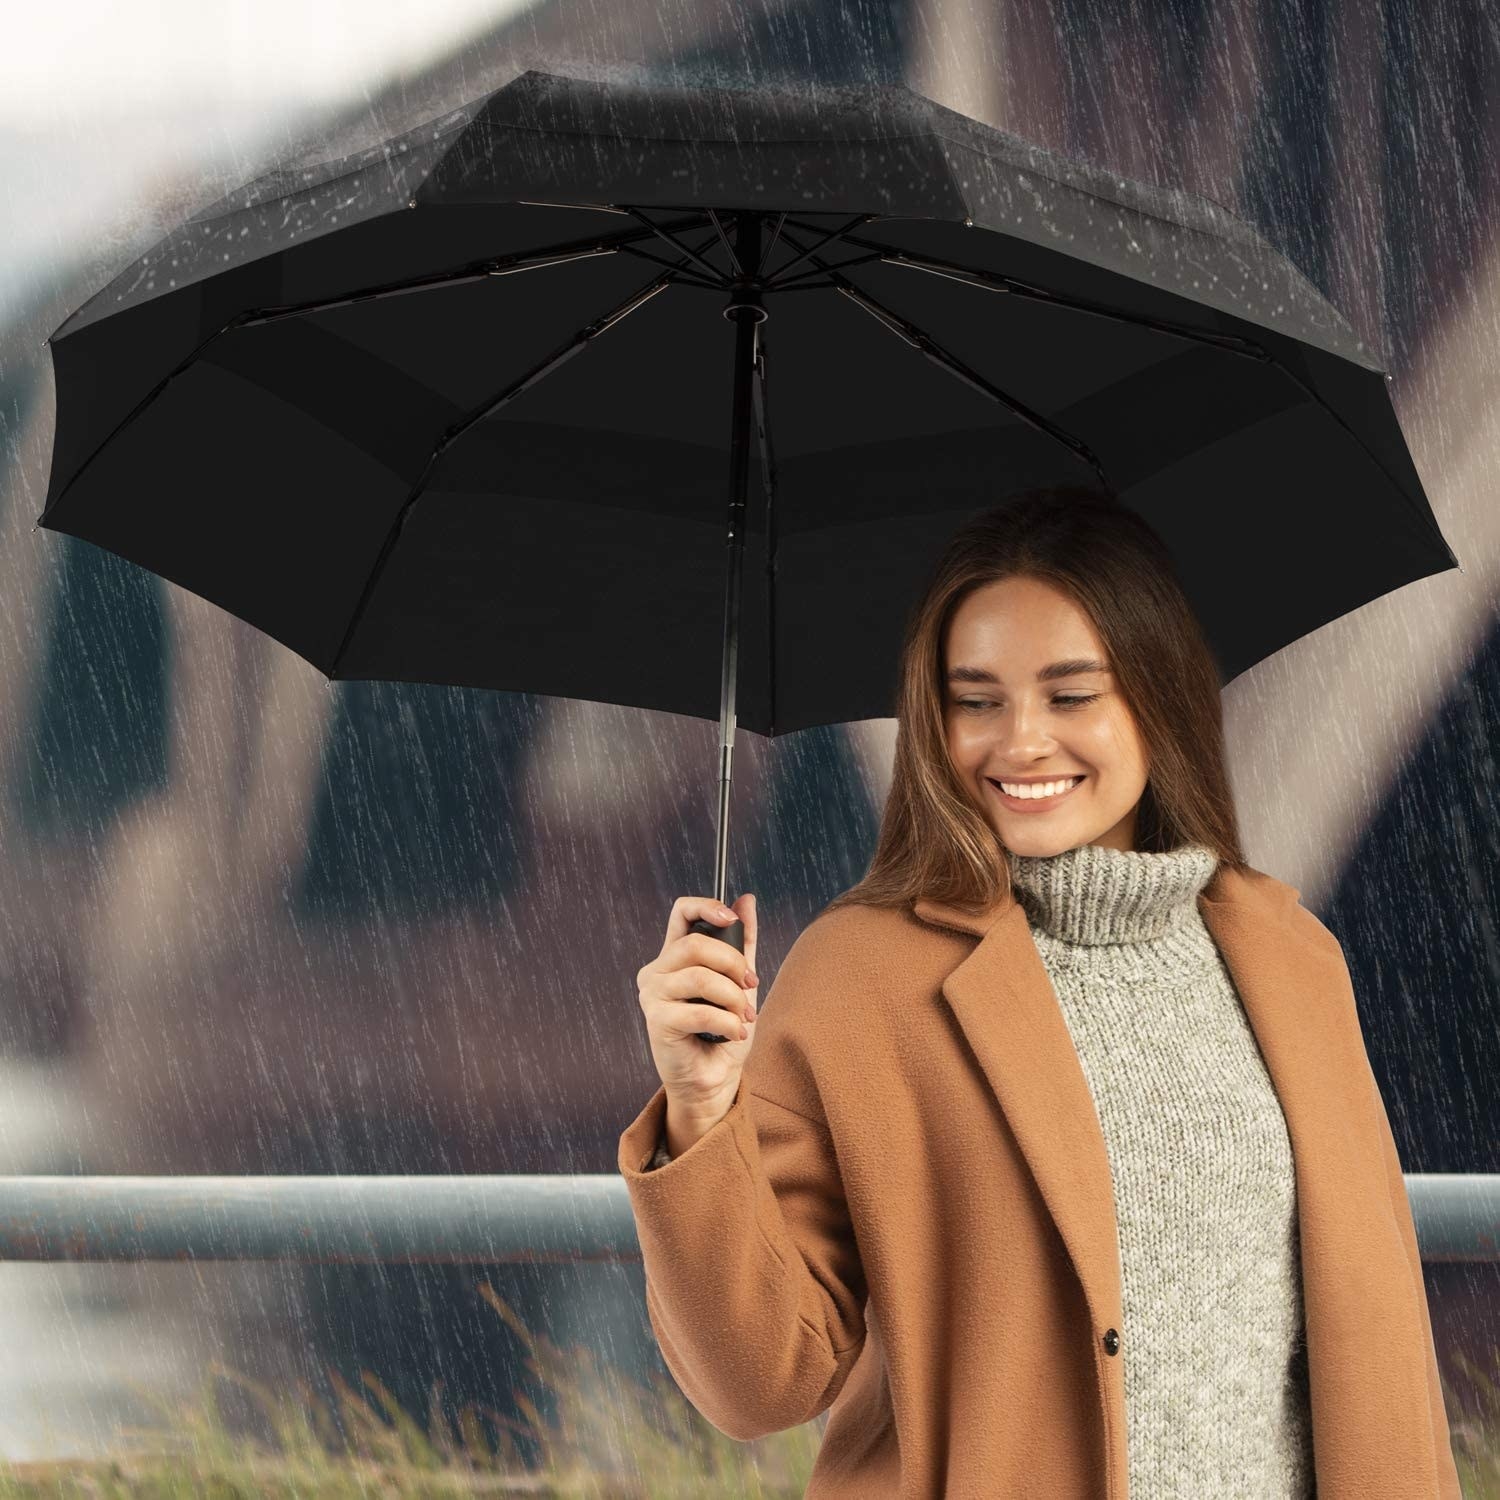 A person holding the umbrella in the rain